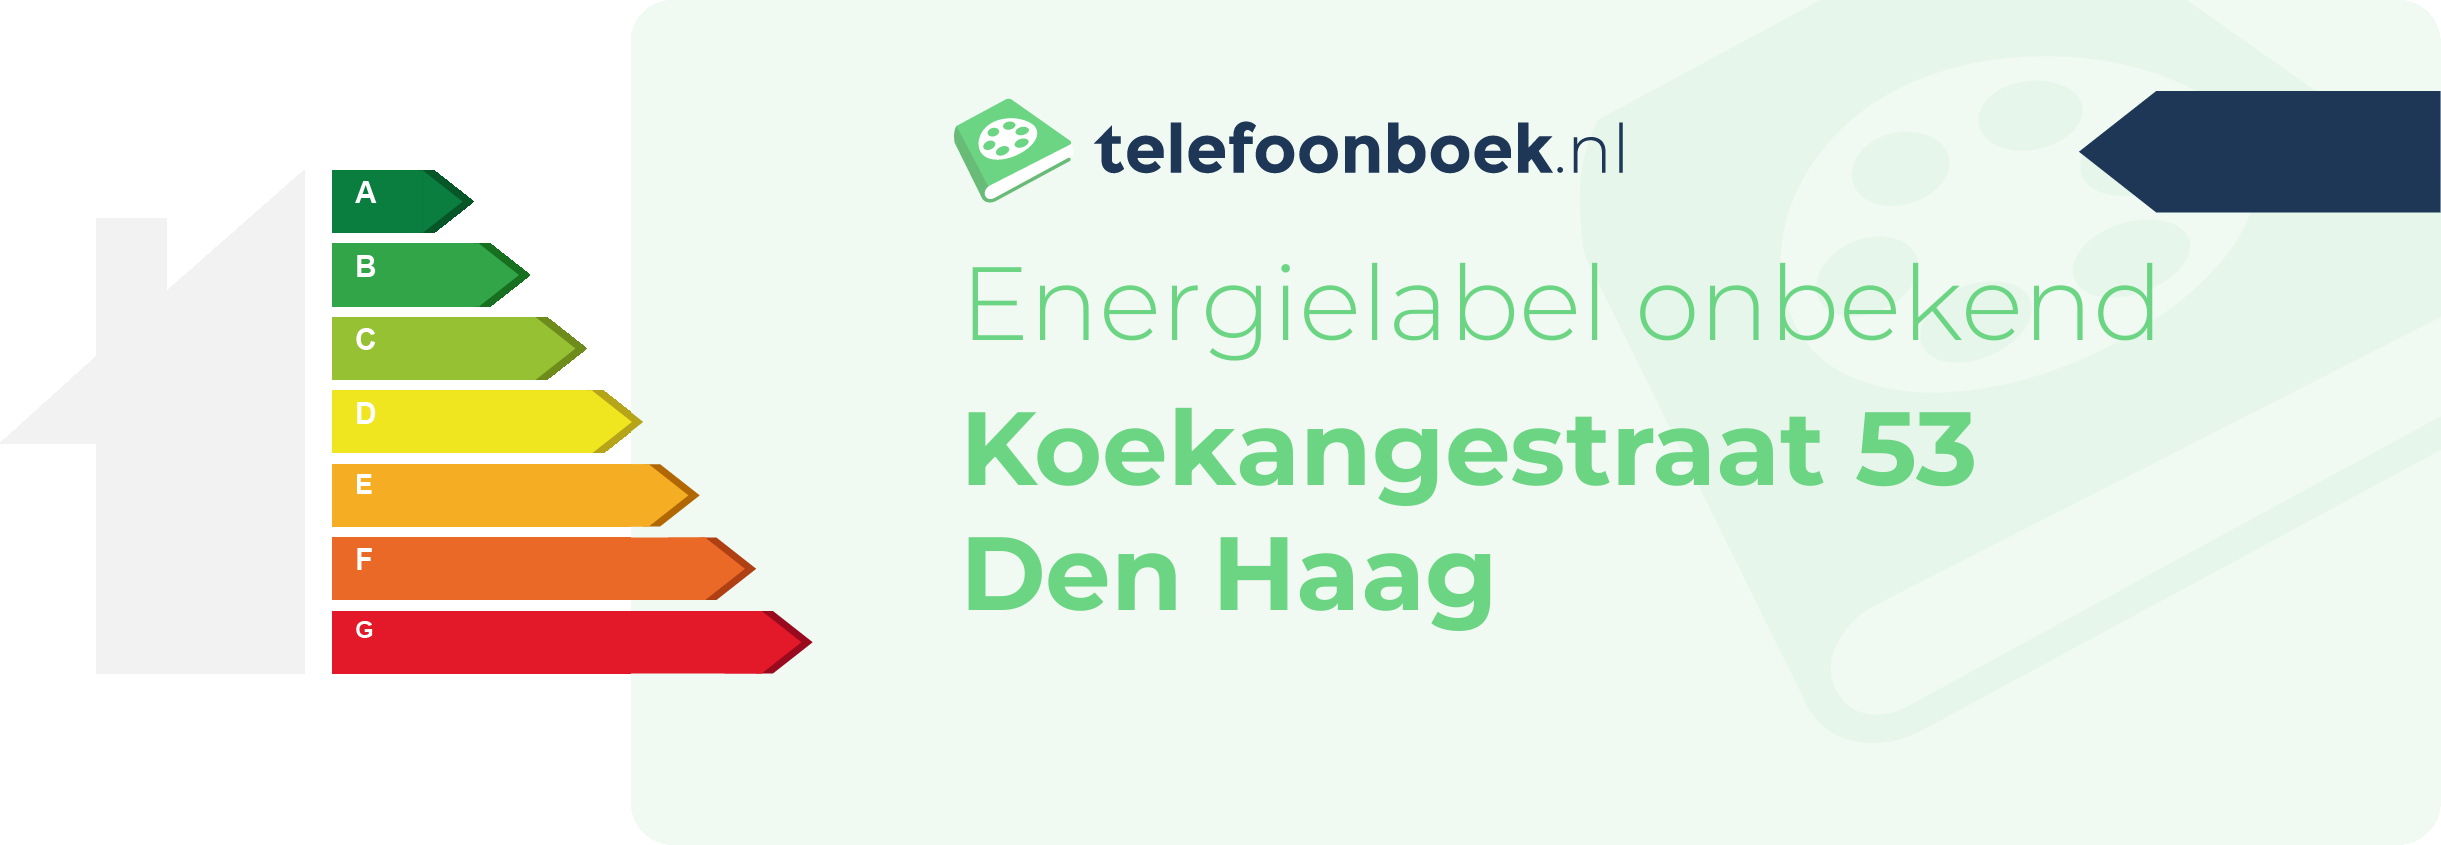 Energielabel Koekangestraat 53 Den Haag